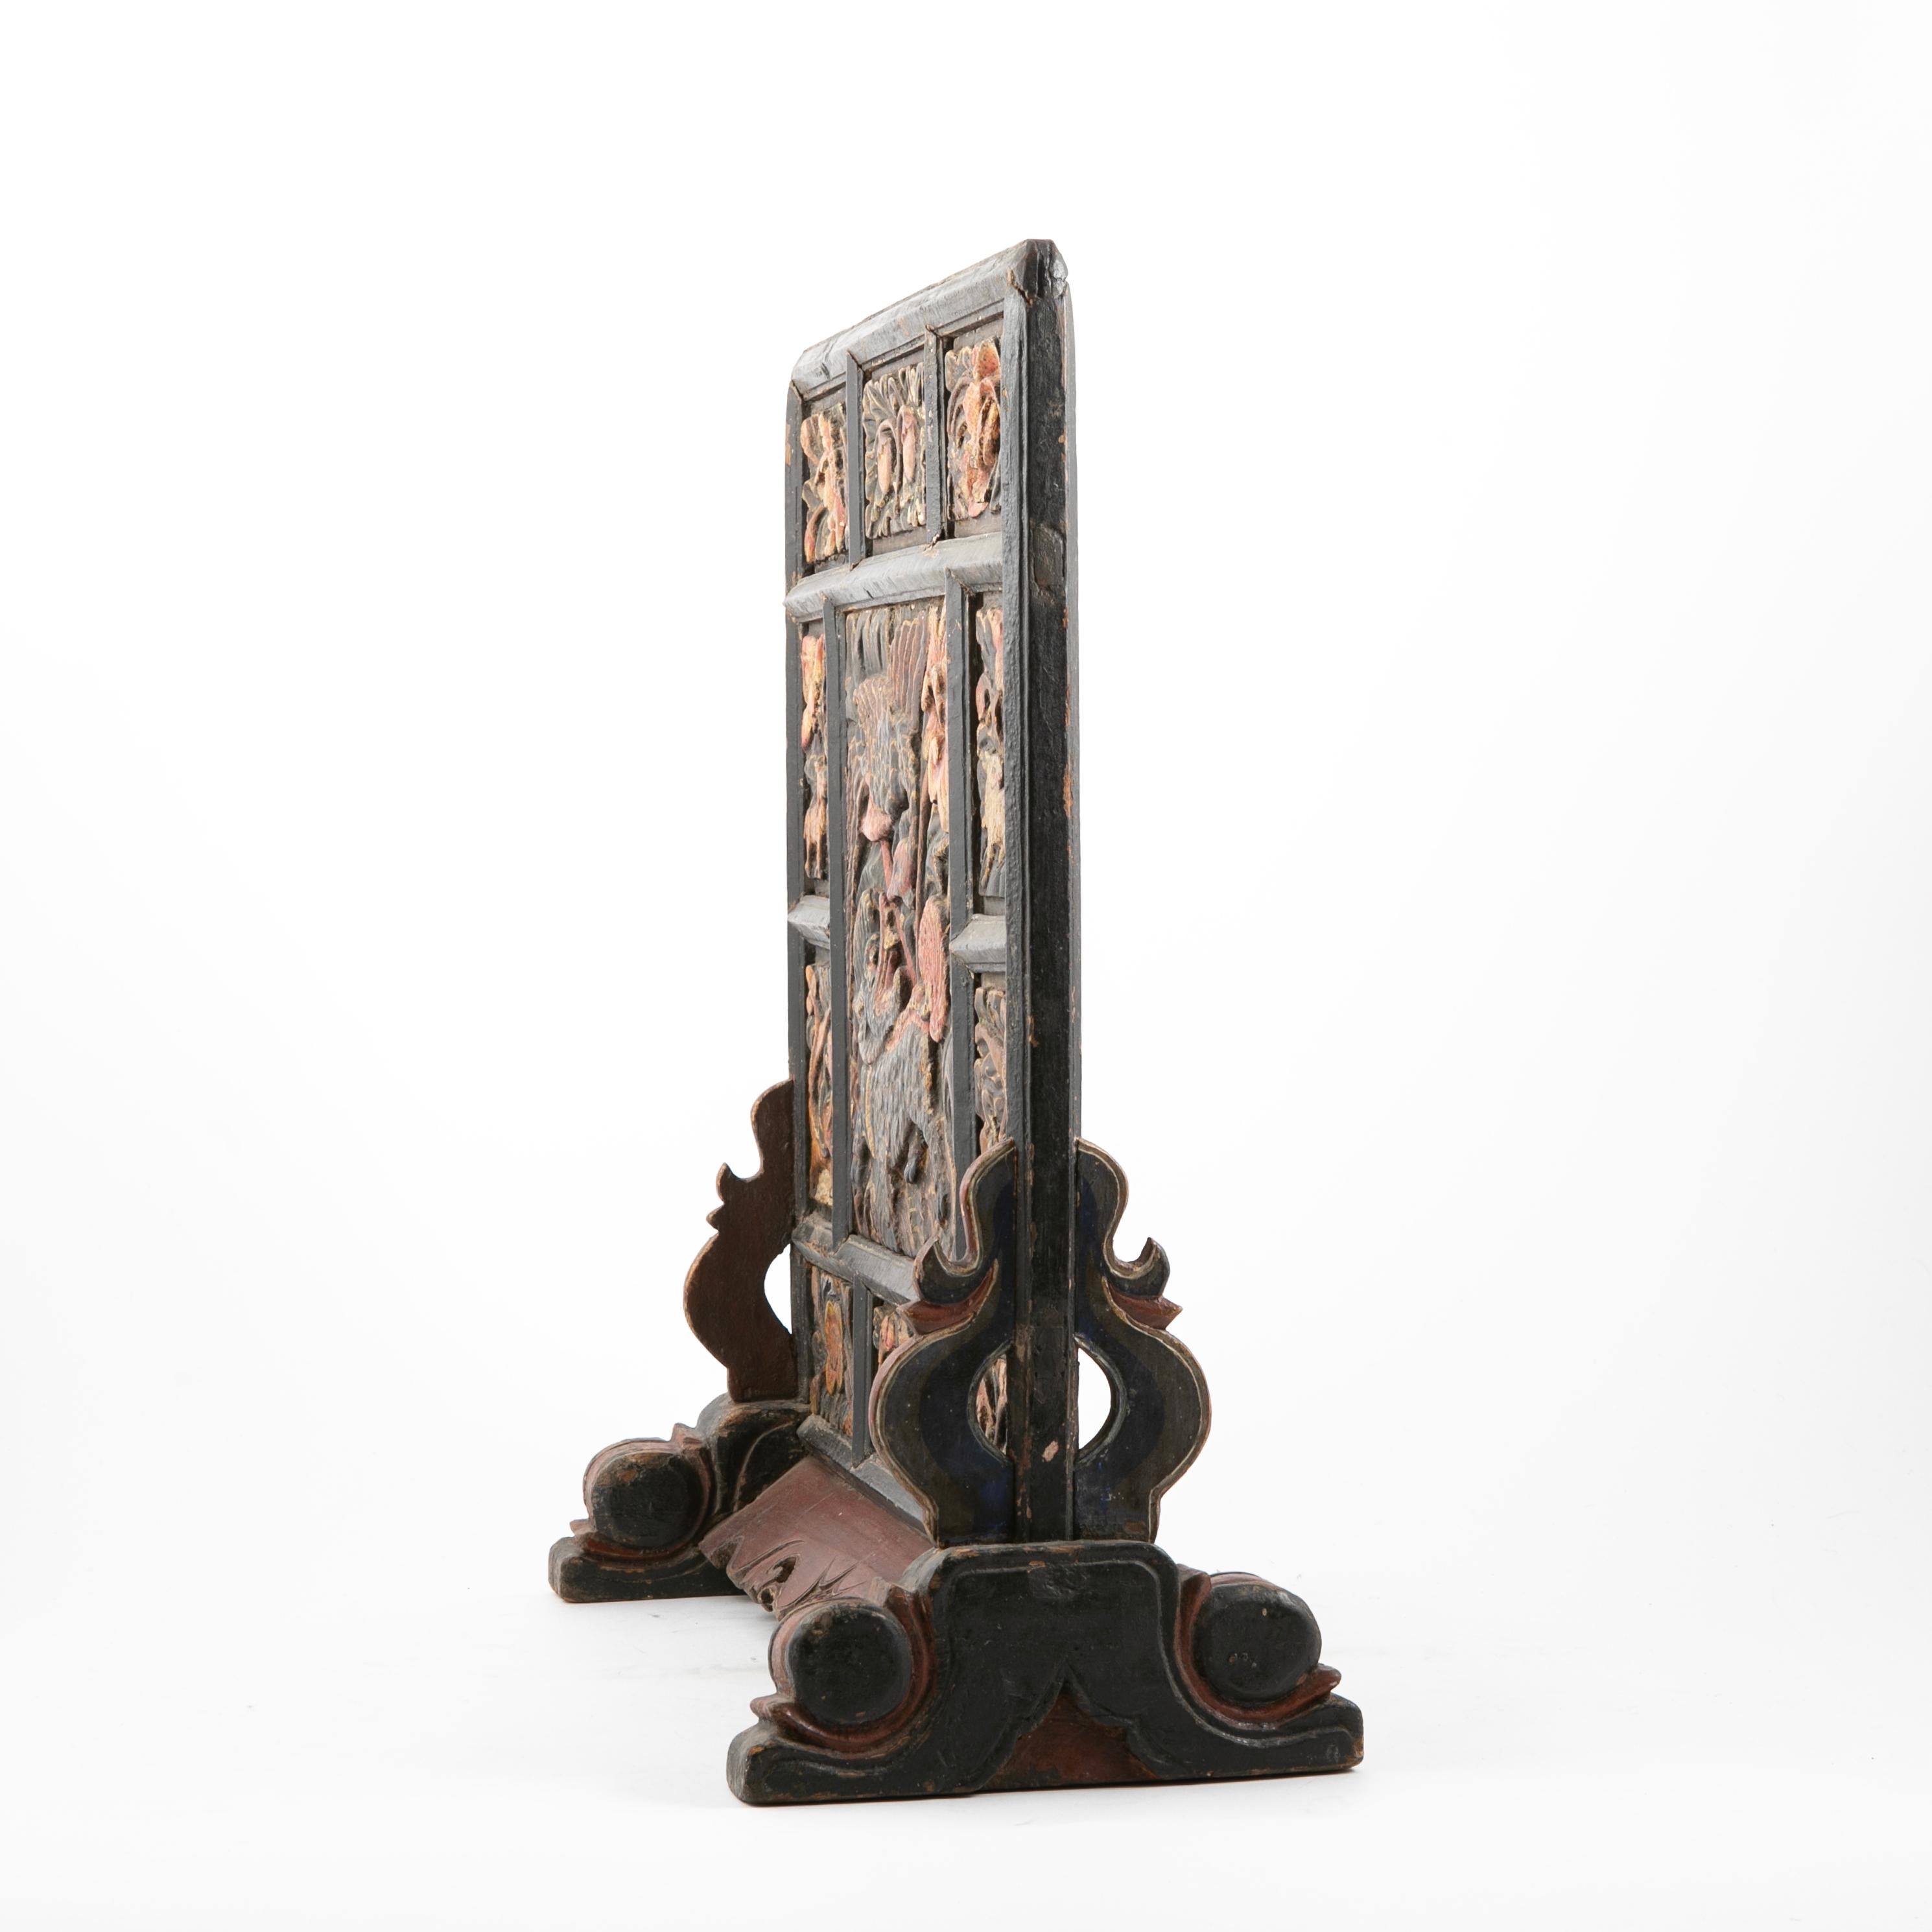 Rare paravent de table sur pied de la dynastie Ming des 16-17e siècles. État d'origine intact.
En bois sculpté à la main, le panneau est sculpté de détails en relief représentant un dragon, des grues, des animaux mythiques, des fleurs, etc. peints